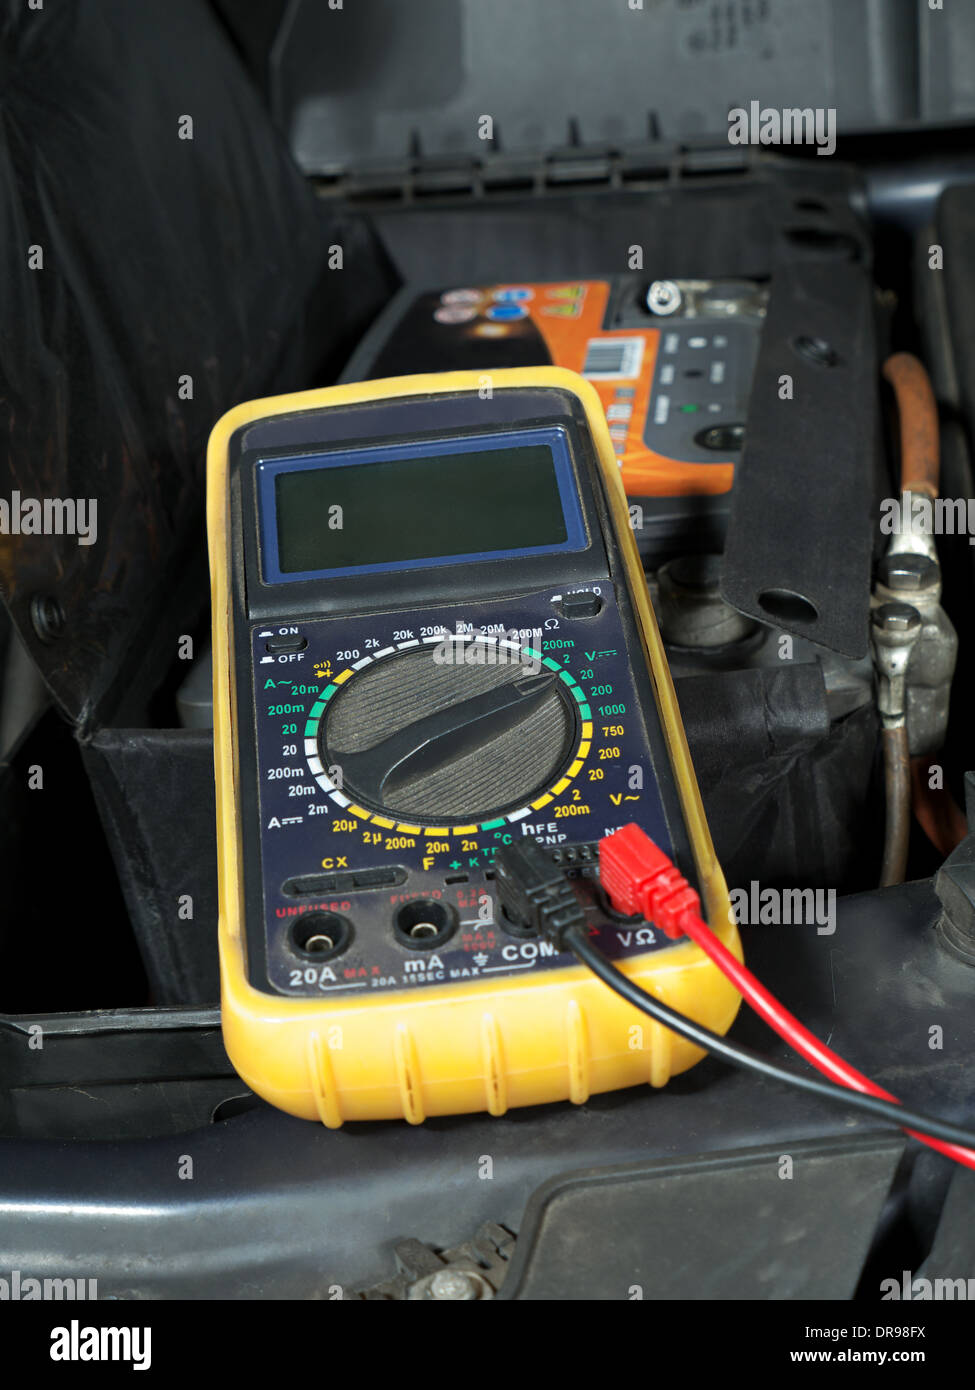 Multimeter eingerichtet und bereit für Ihre Auto-Batterie-Spannungsmessung  Stockfotografie - Alamy